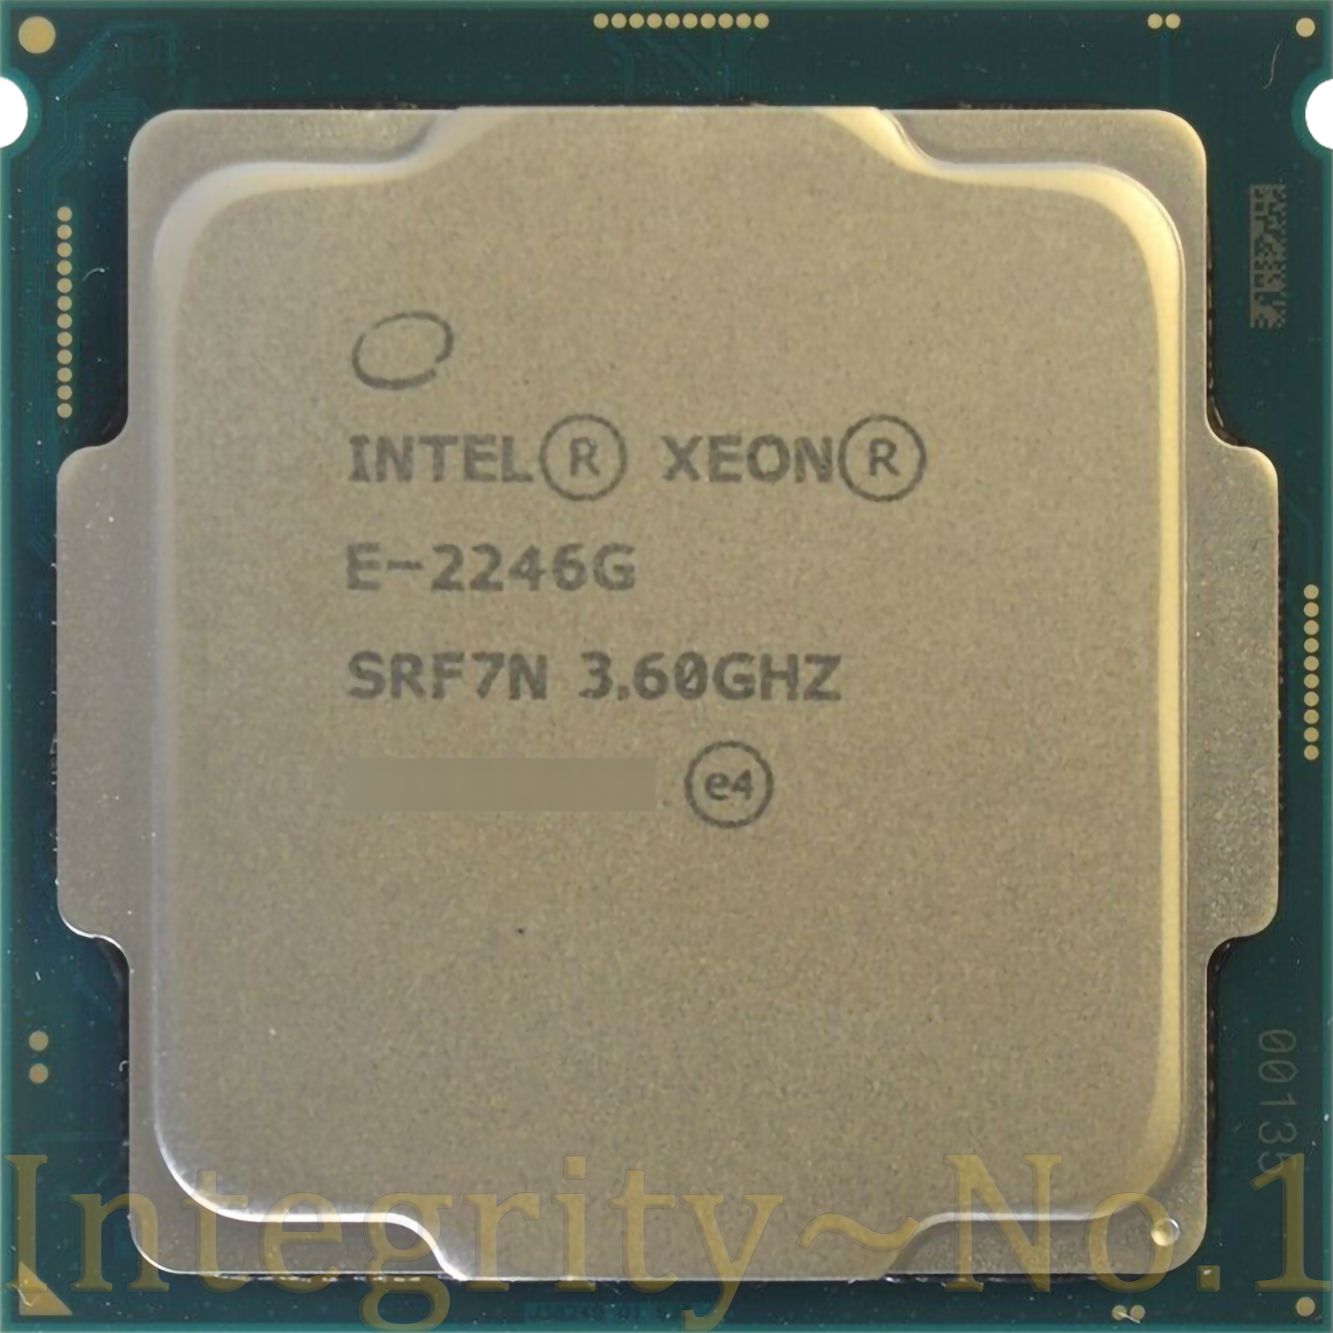 Pentium g4600 gta 5 фото 109